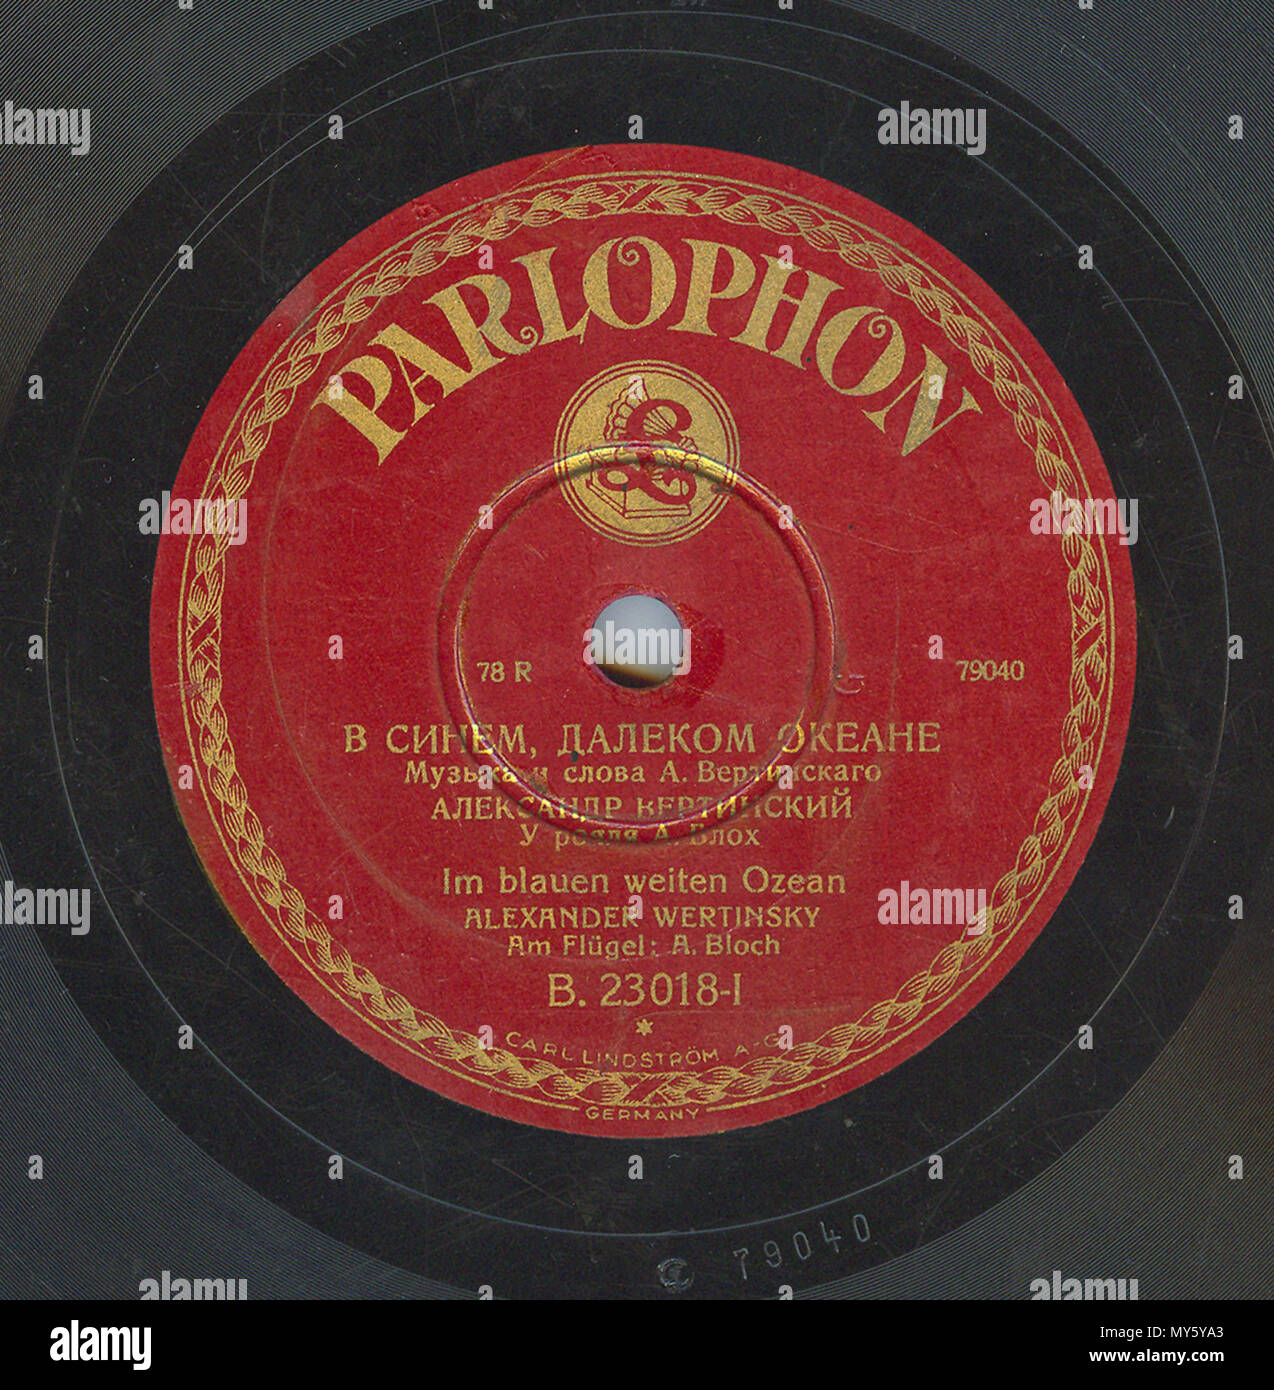 . Englisch: Vertinsky Parlophone B. 23018 01. 6. April 2010, 12:02:26. Parlophone 548 Vertinsky Parlophone B. 23018, 01. Stockfoto